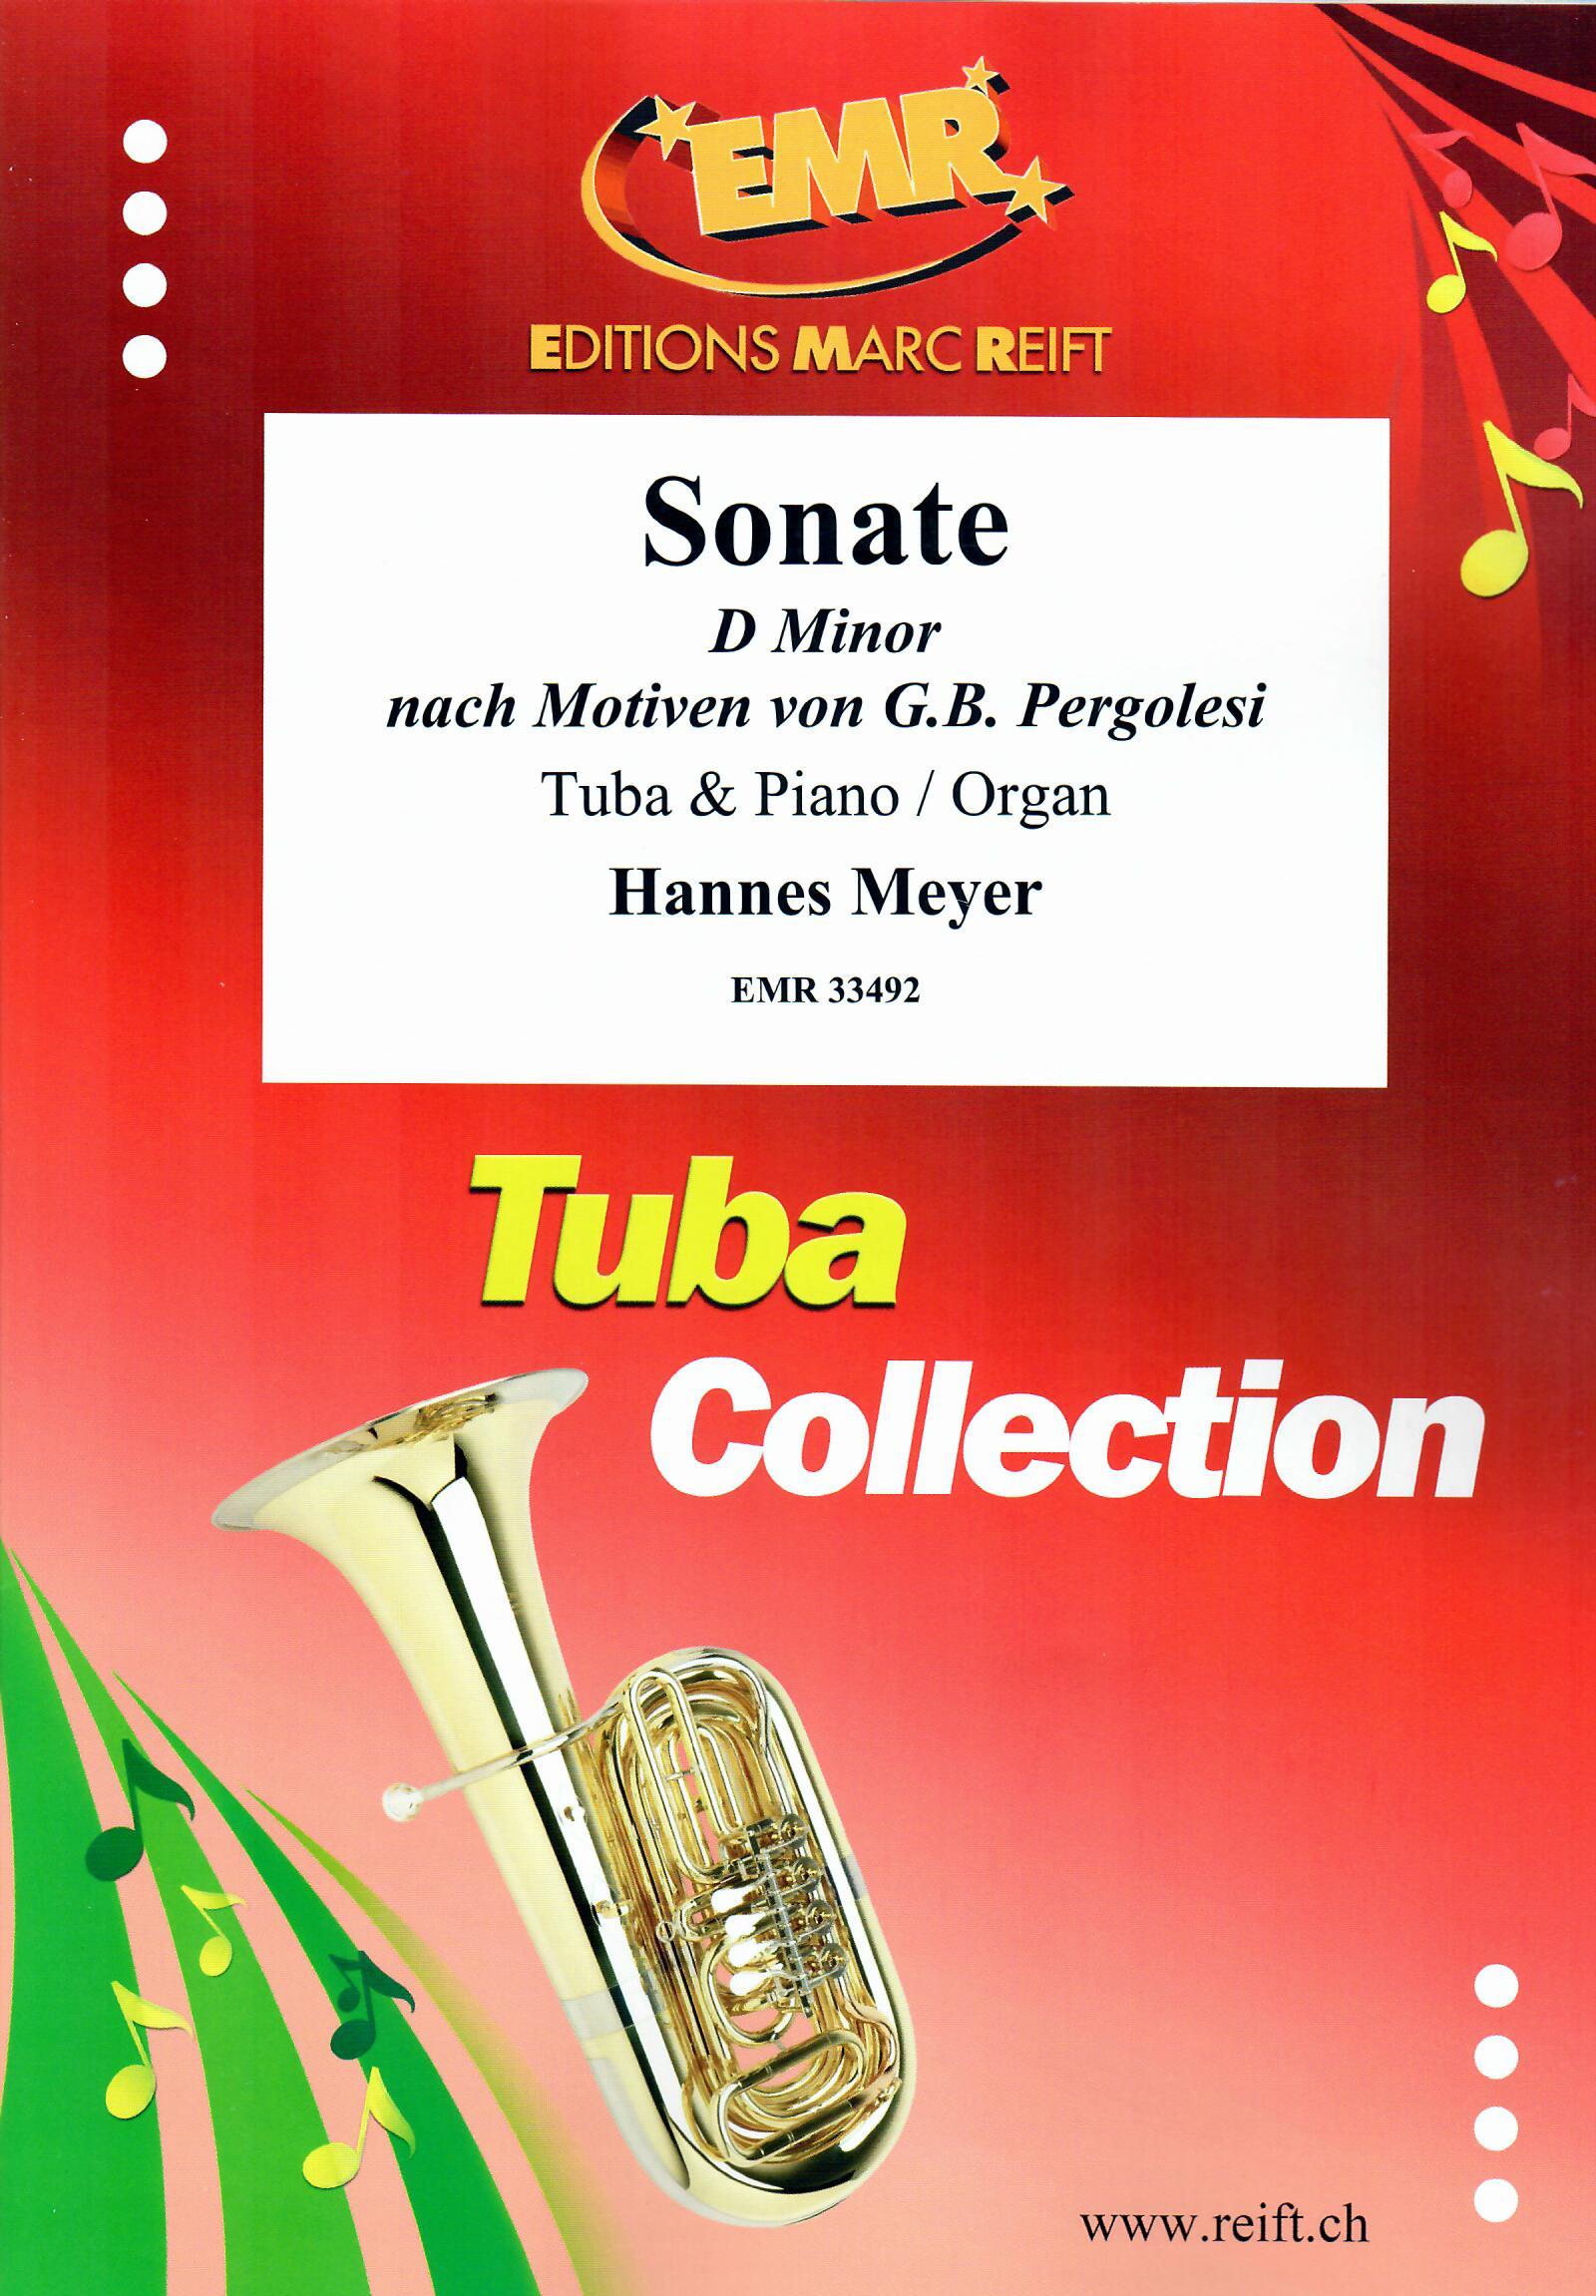 SONATE D MINOR, SOLOS - E♭. Bass